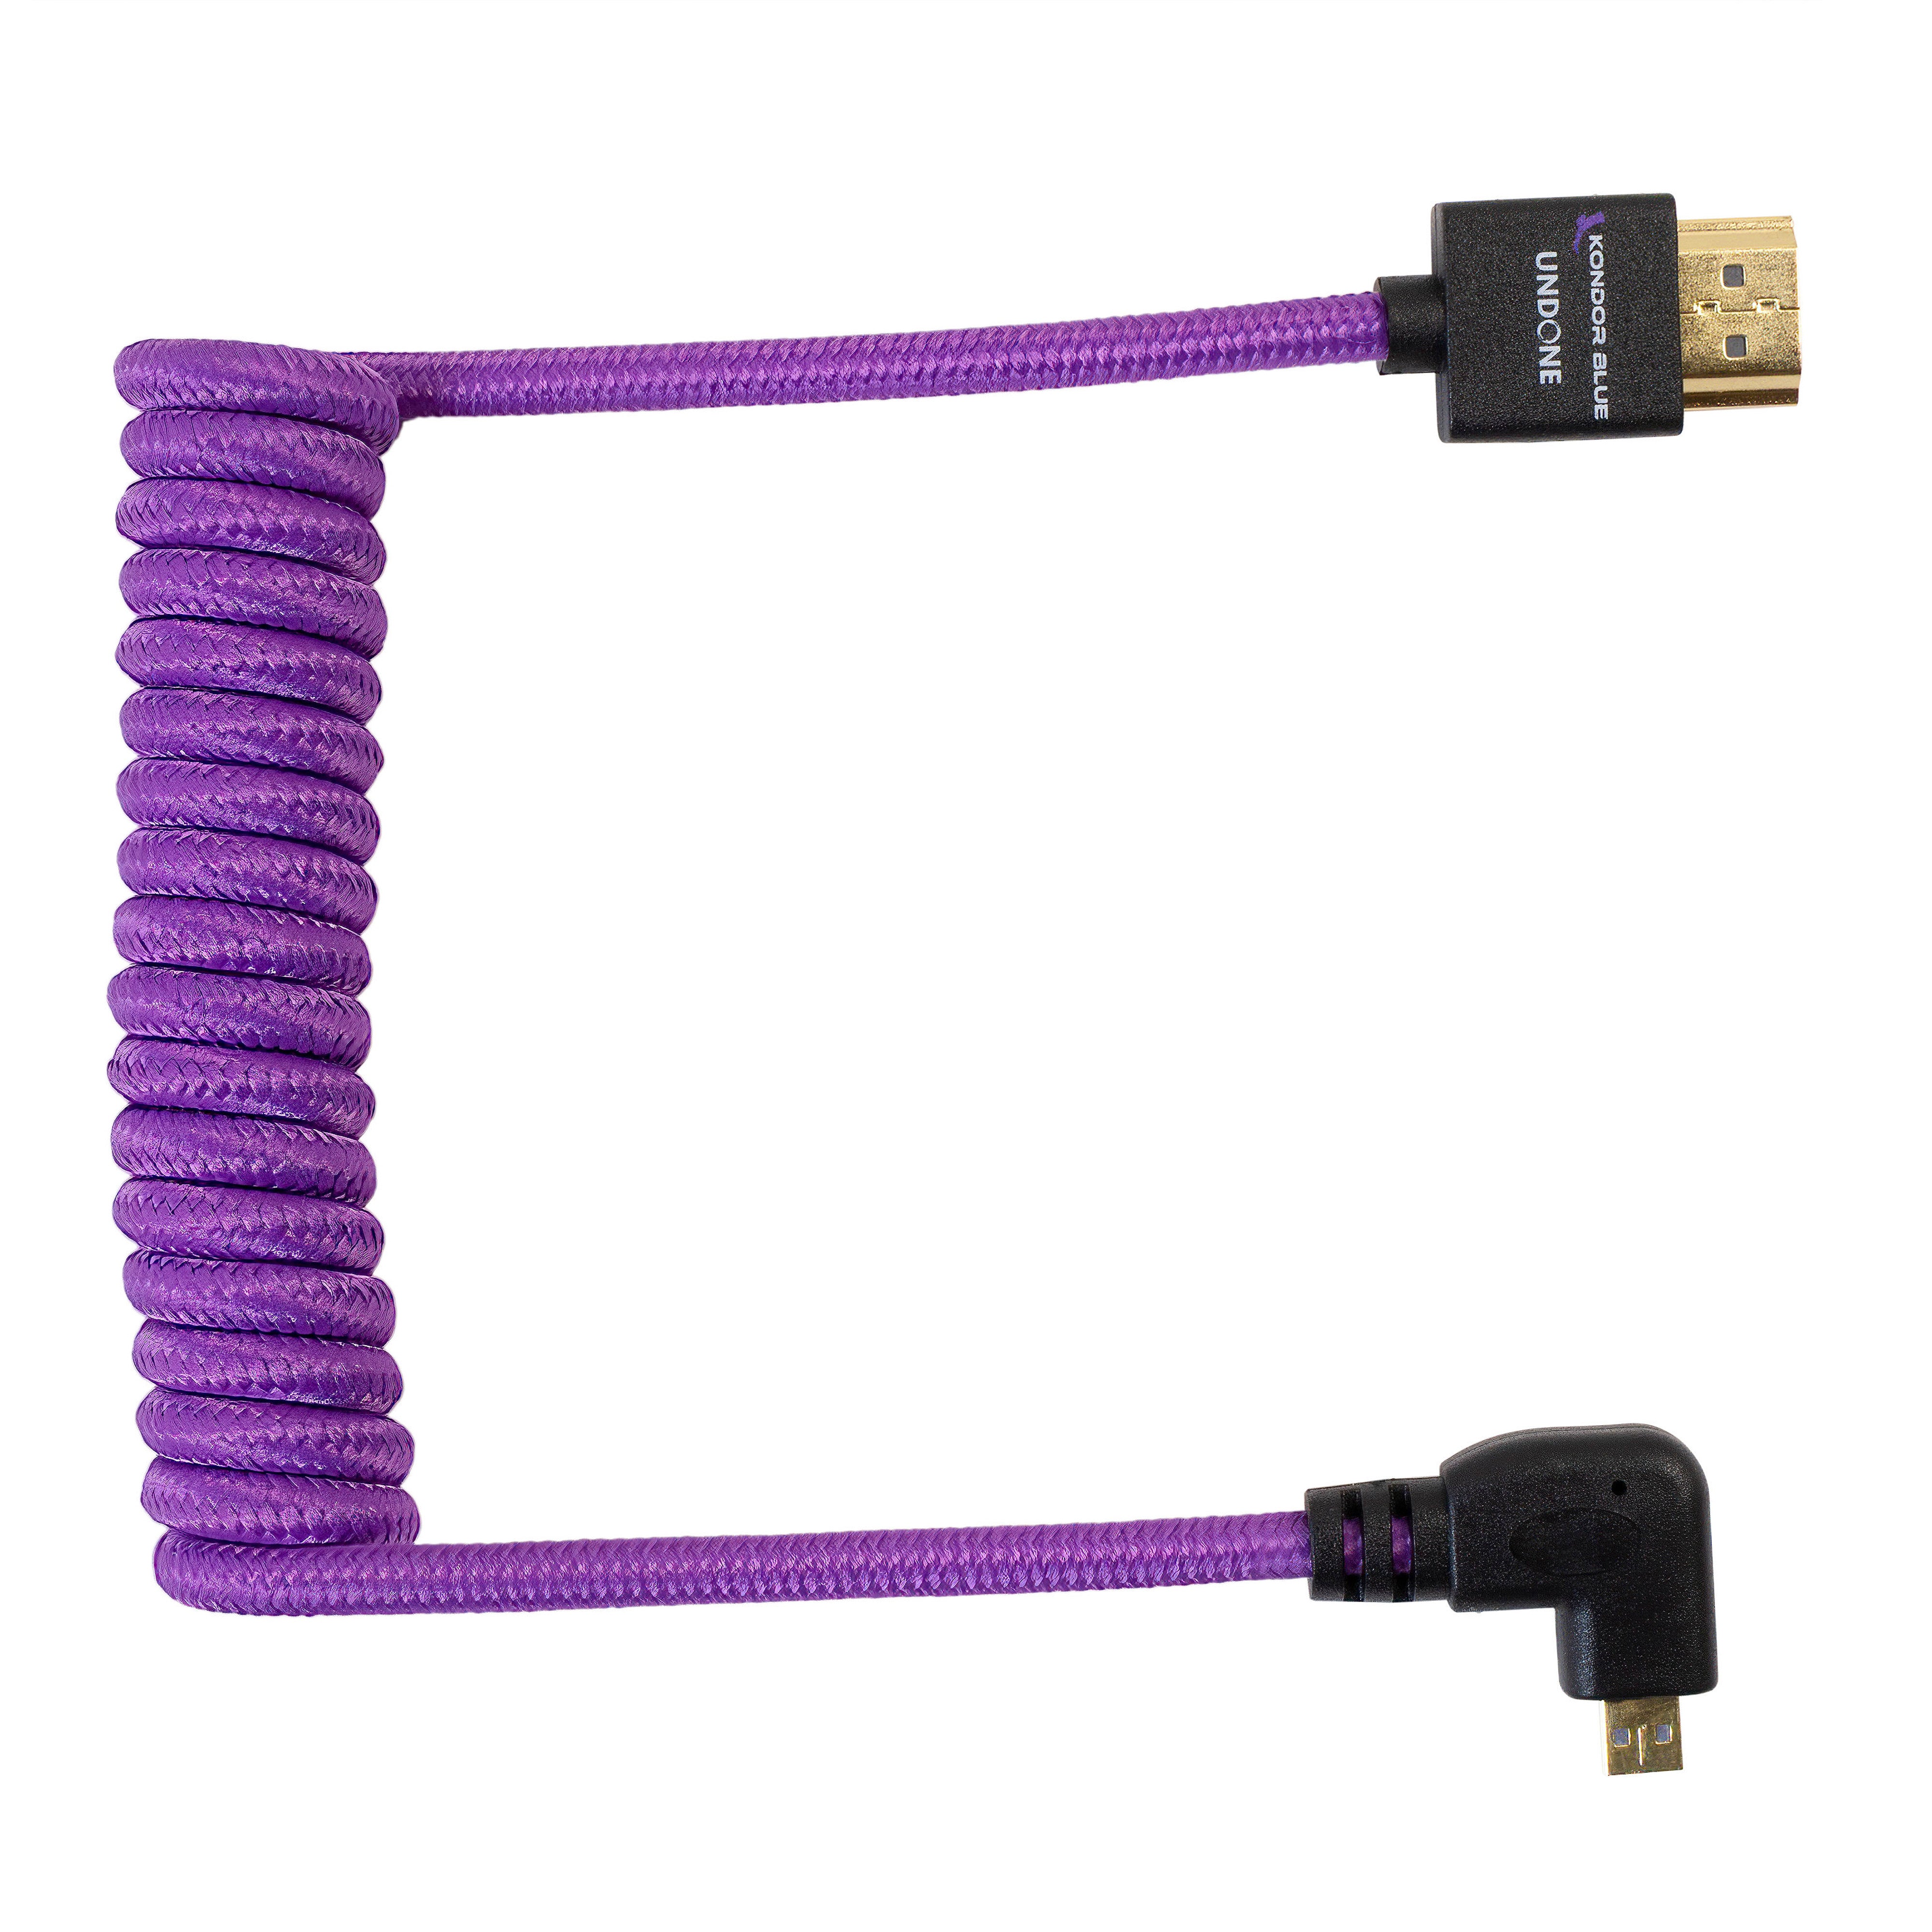 Kondor Blue Gerald Undone MK2 Full HDMI to Right Angle Micro HDMI Cable 12&quot;-24&quot; Coiled (Purple)Right